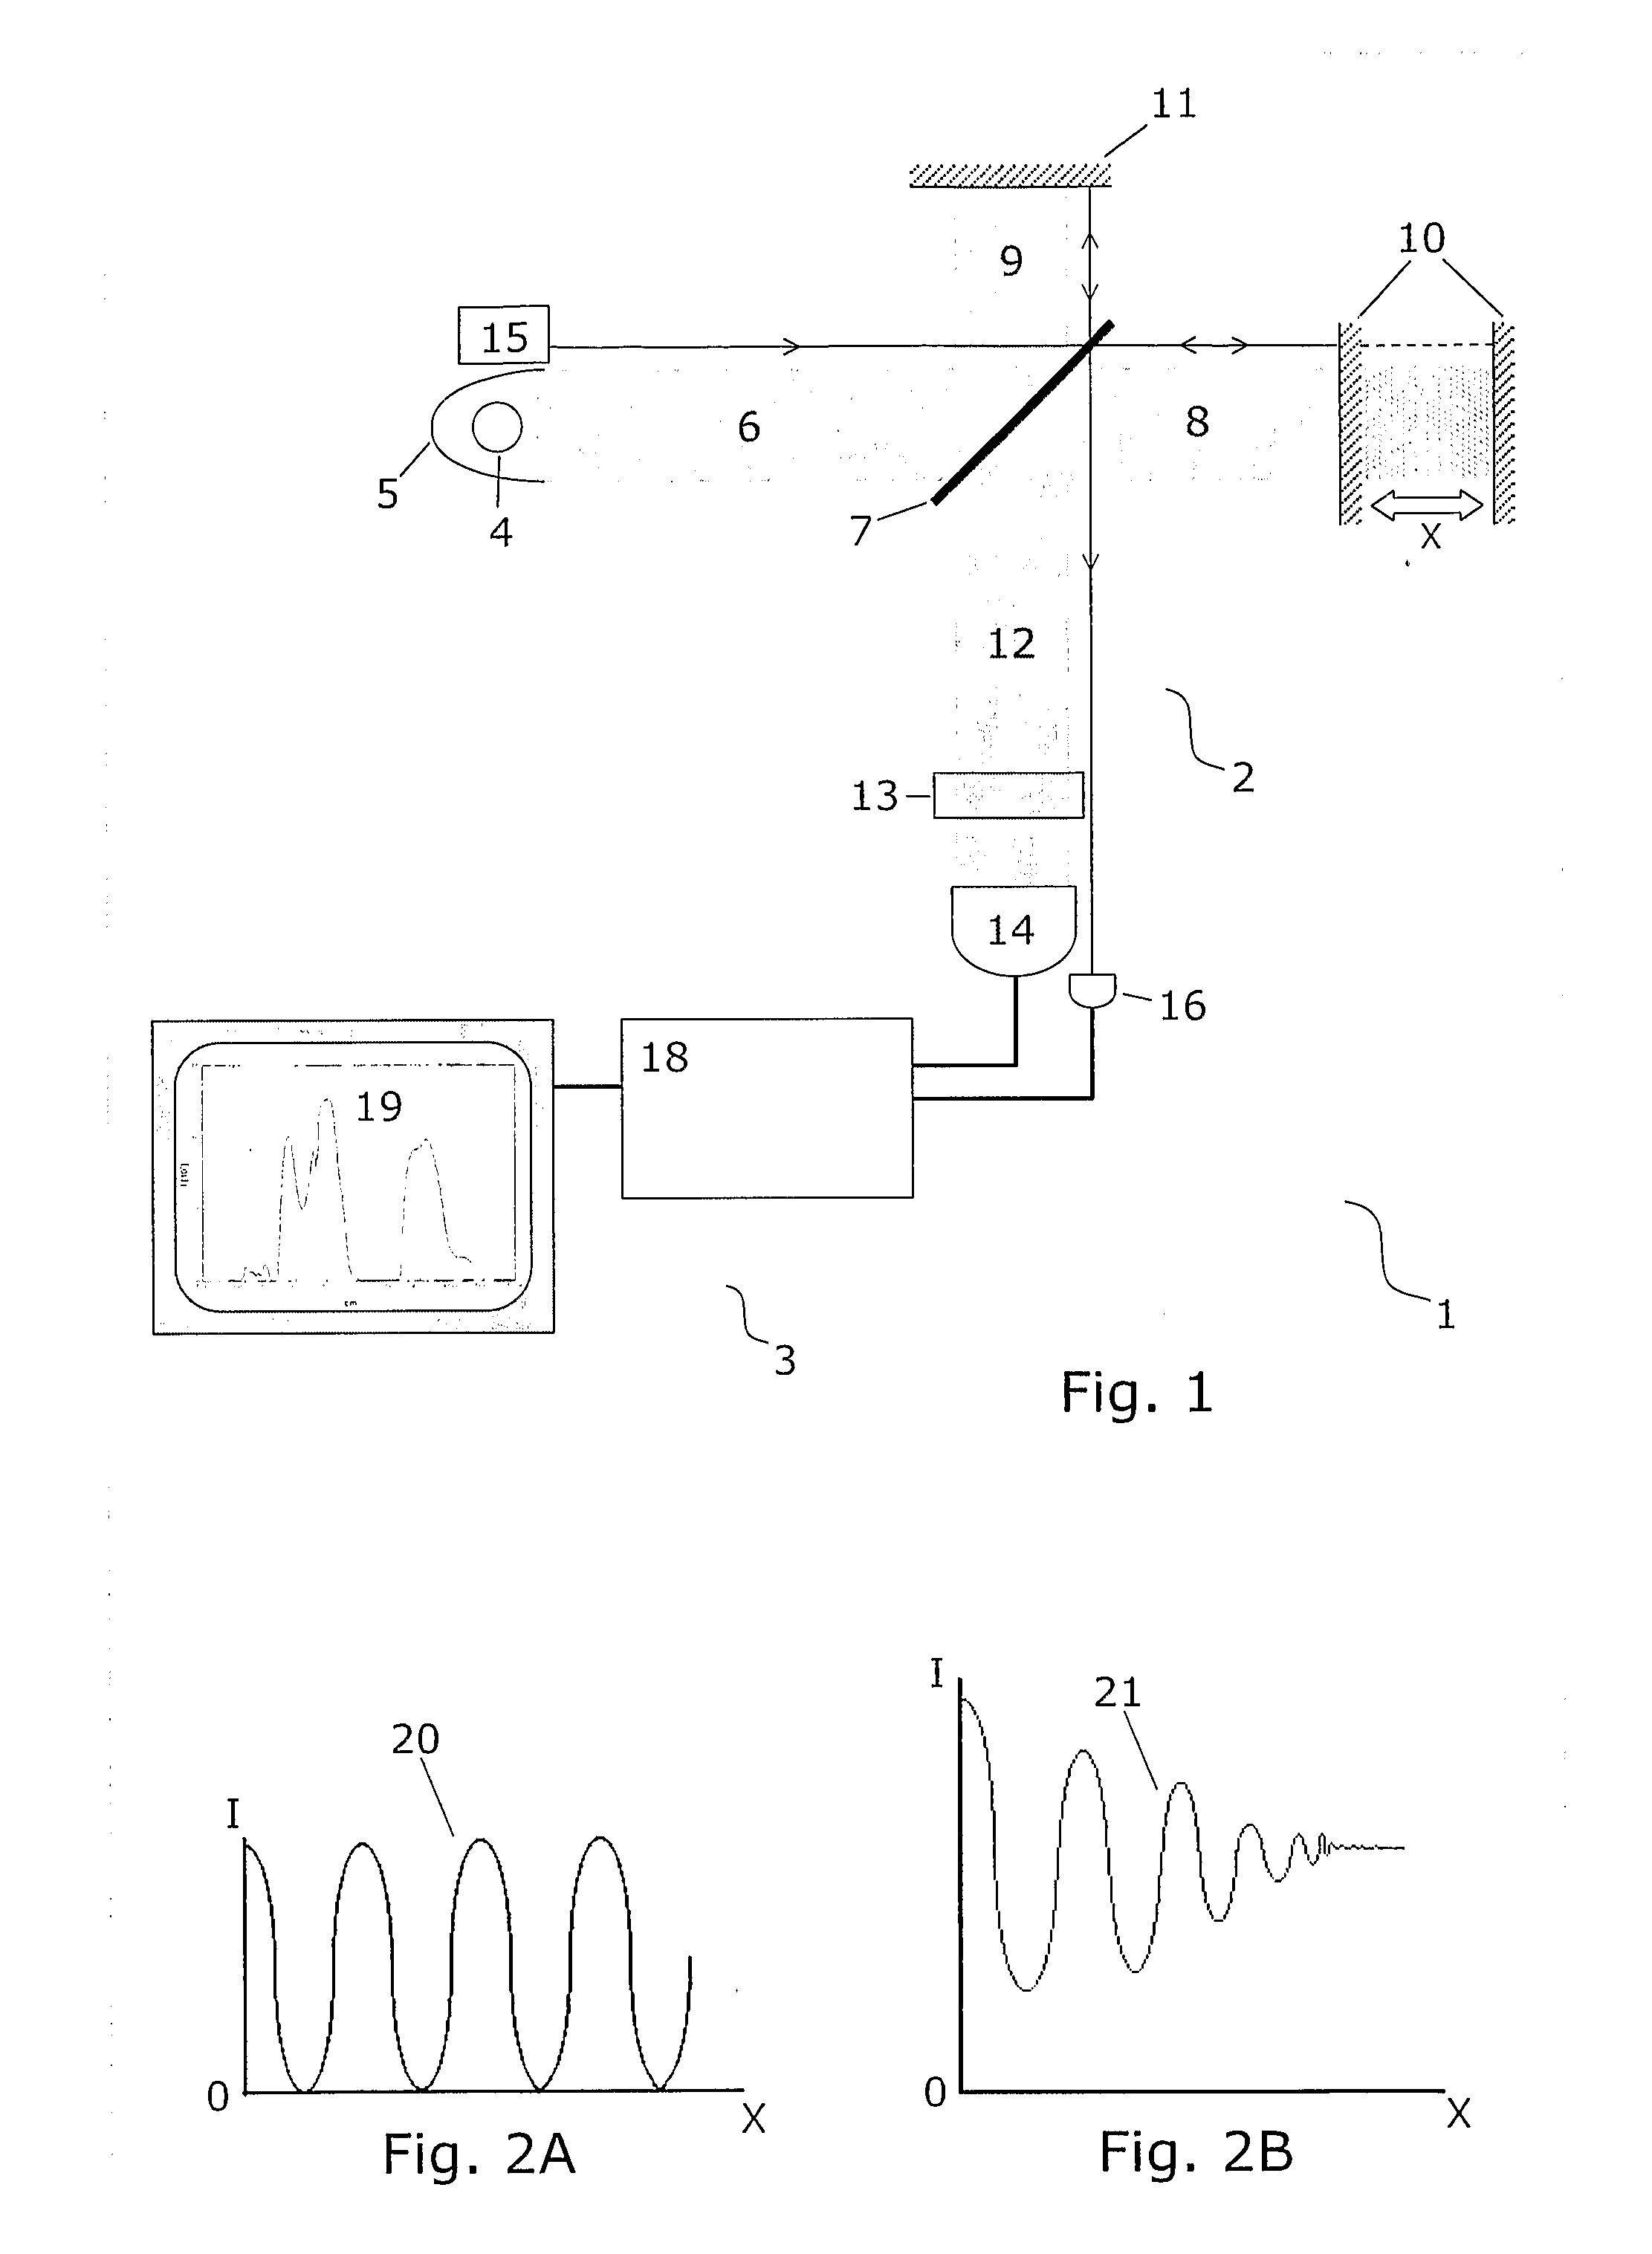 Method for Standardising a Spectrometer